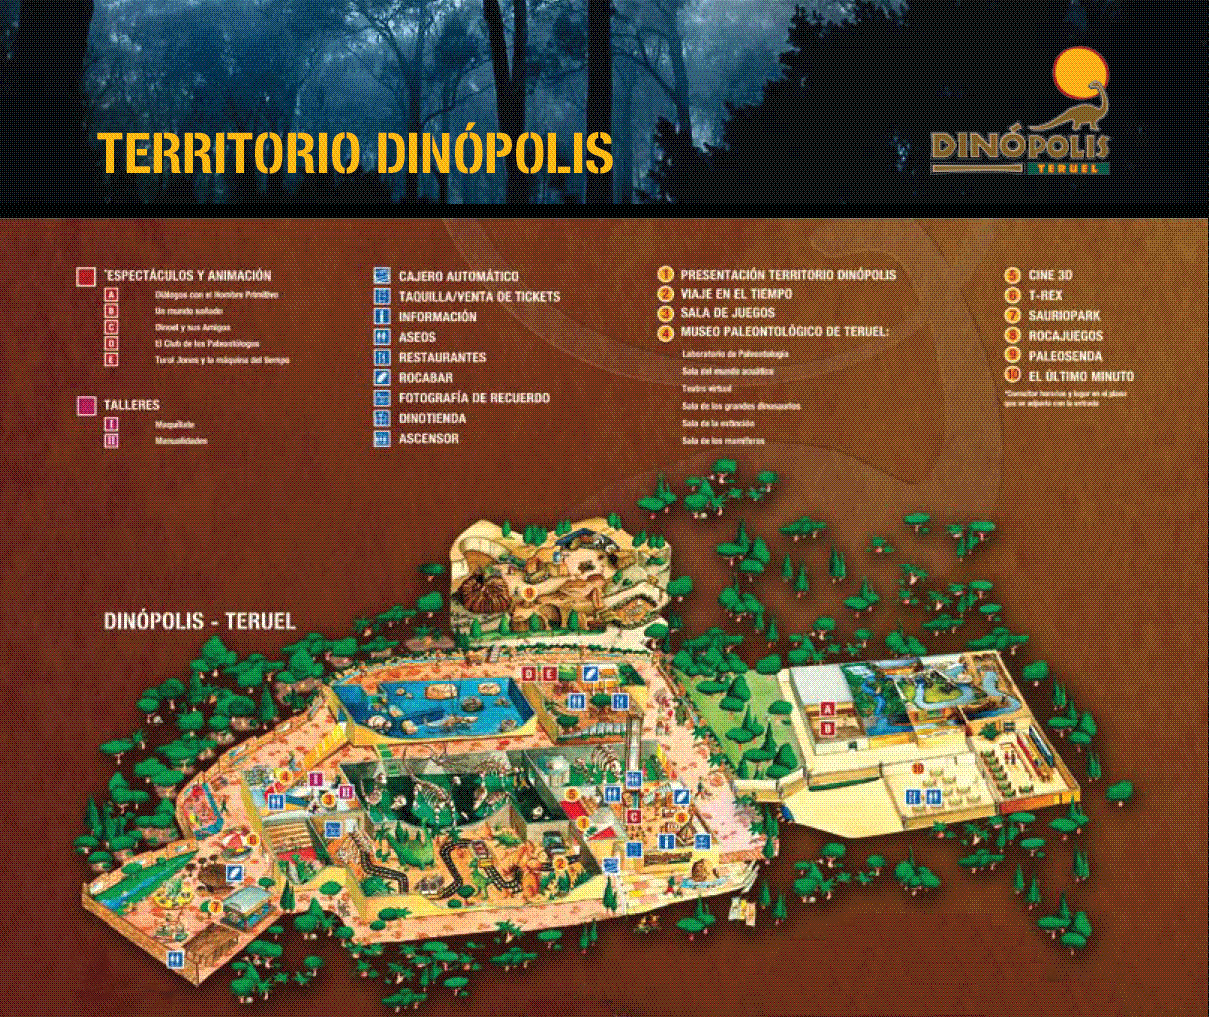 Plano territorio Dinópolis Parque temático de Dinosaurios - Teruel - España